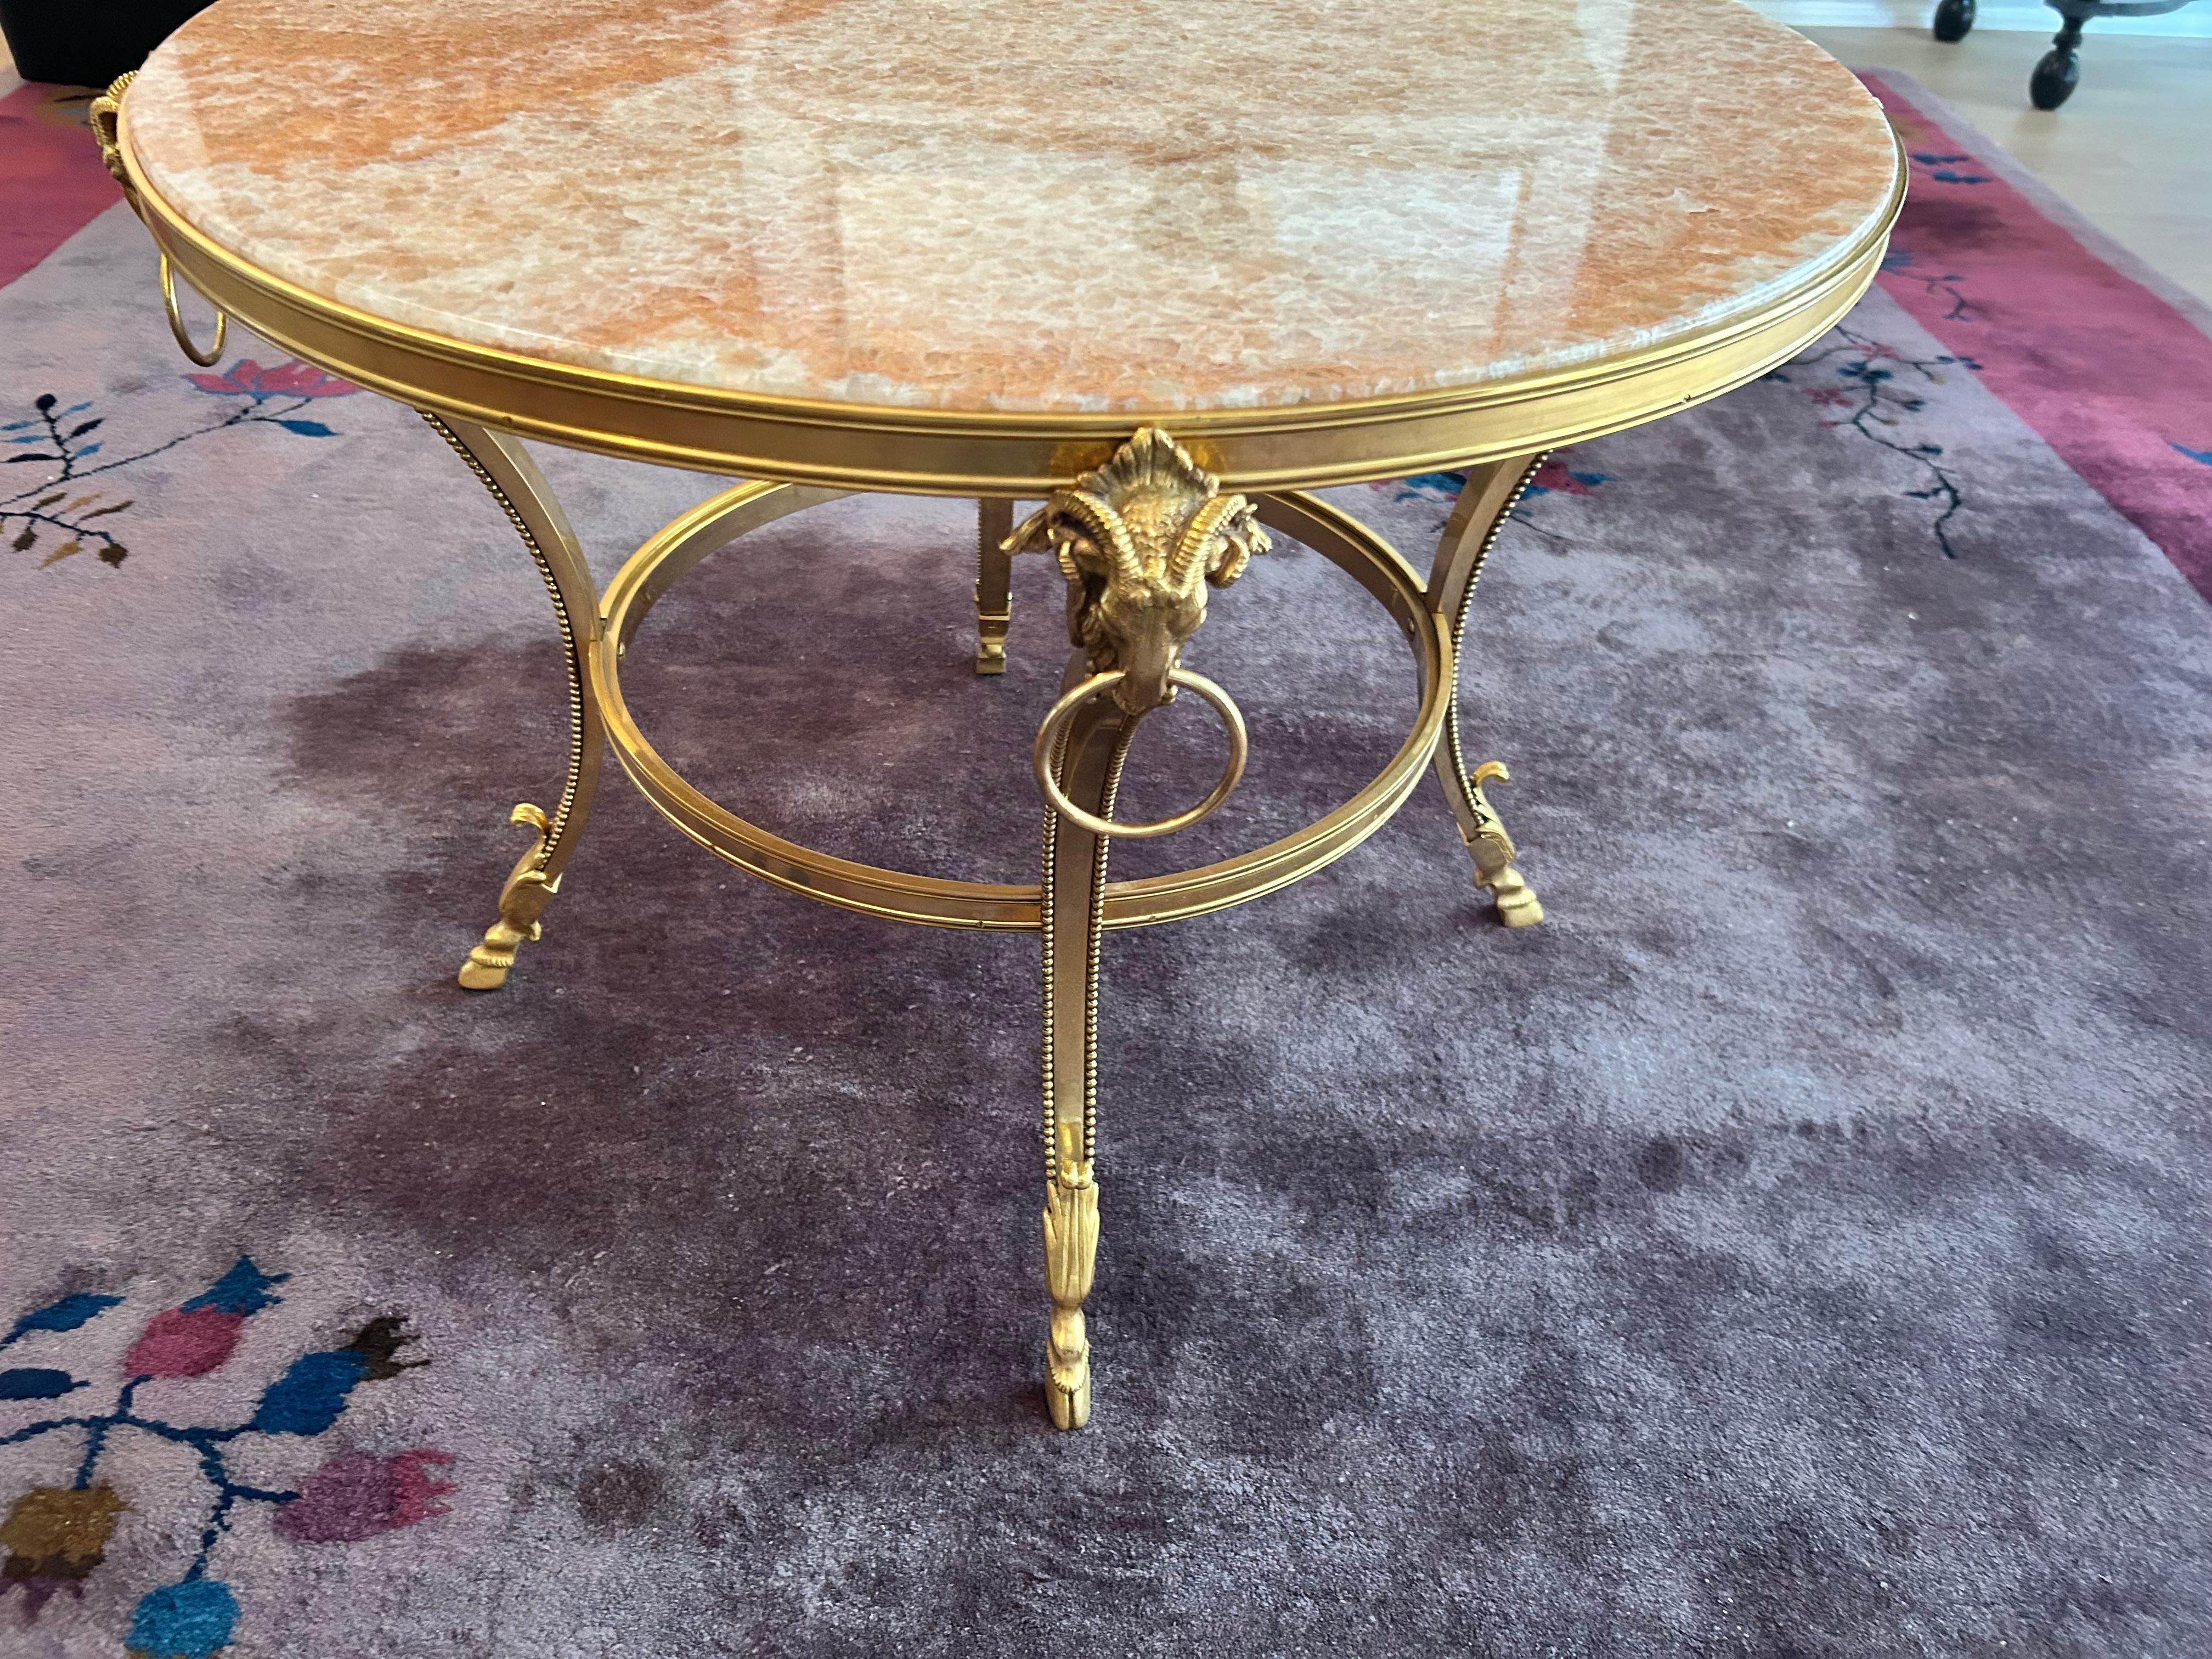 Schöner niedriger Sockeltisch im Louis-XIV-Stil mit vergoldetem Bronzerahmen, konkaven Beinen, die in Widderköpfen mit Ringen enden, und  elegante Hufschuhe. Der Einsatz ist aus rosa/korallenfarbenem Onyx gefertigt.
Dieser Tisch ist in tadellosem